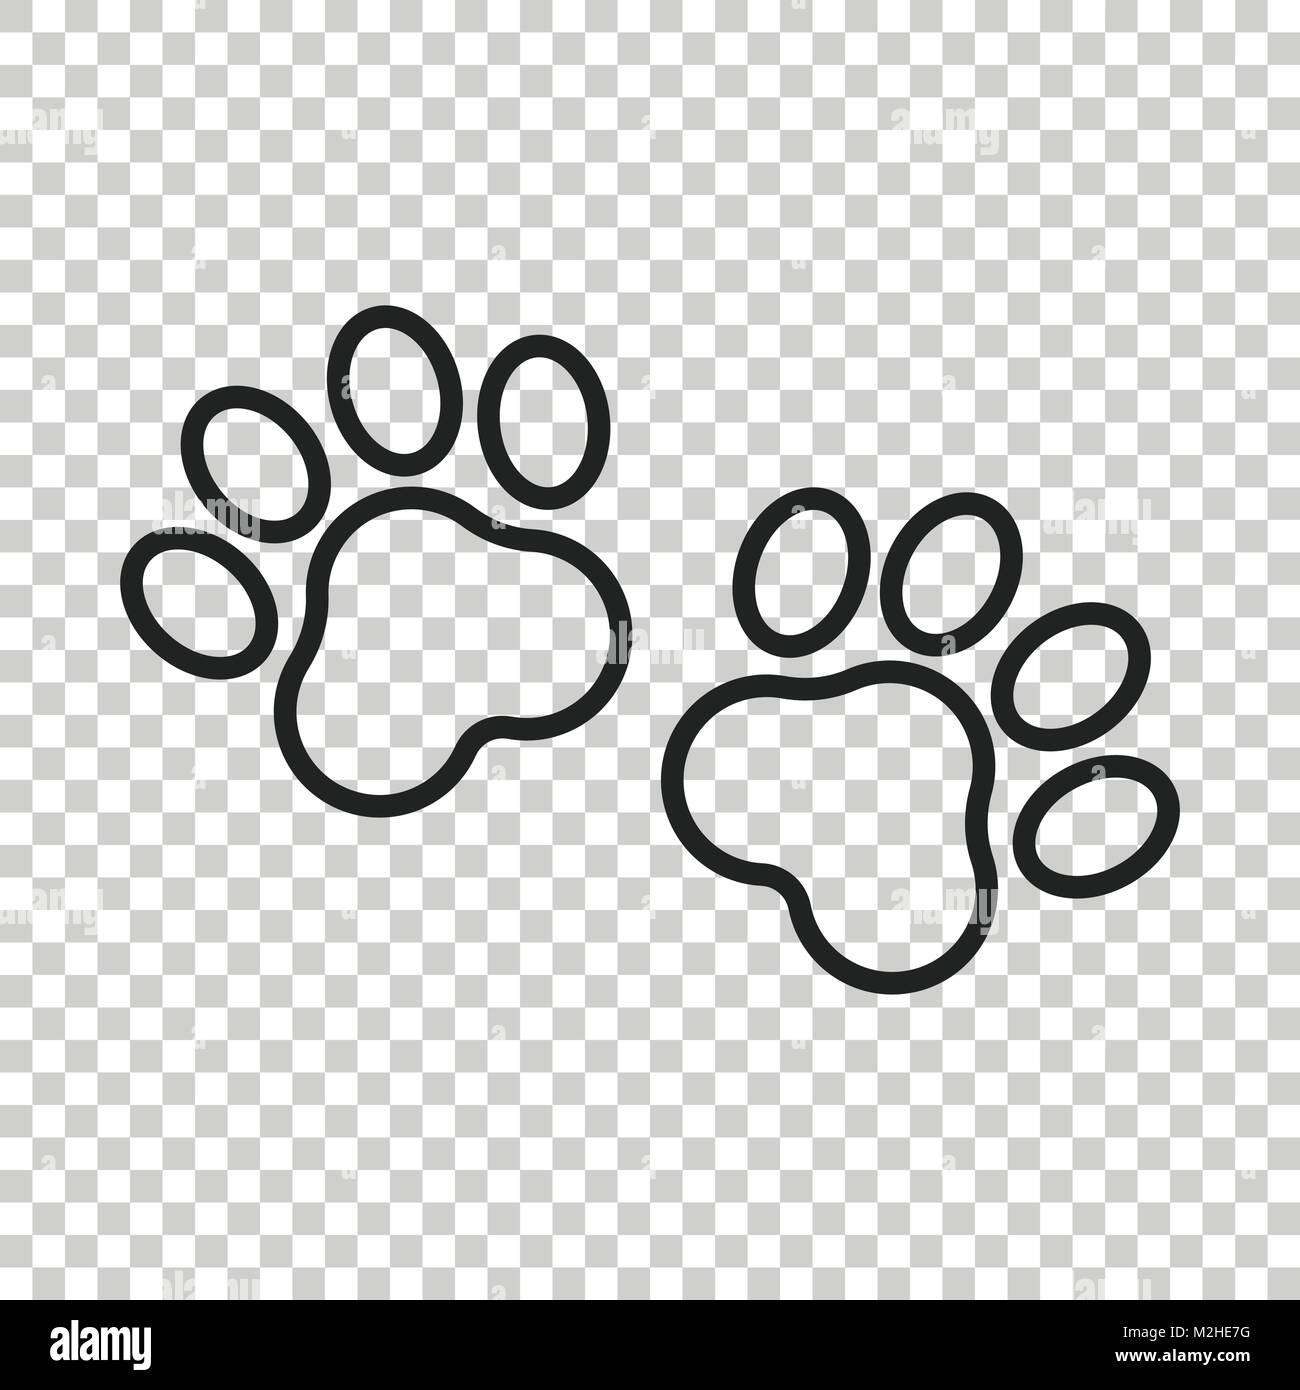 Icono de huella de pata huella de perro o gato, png